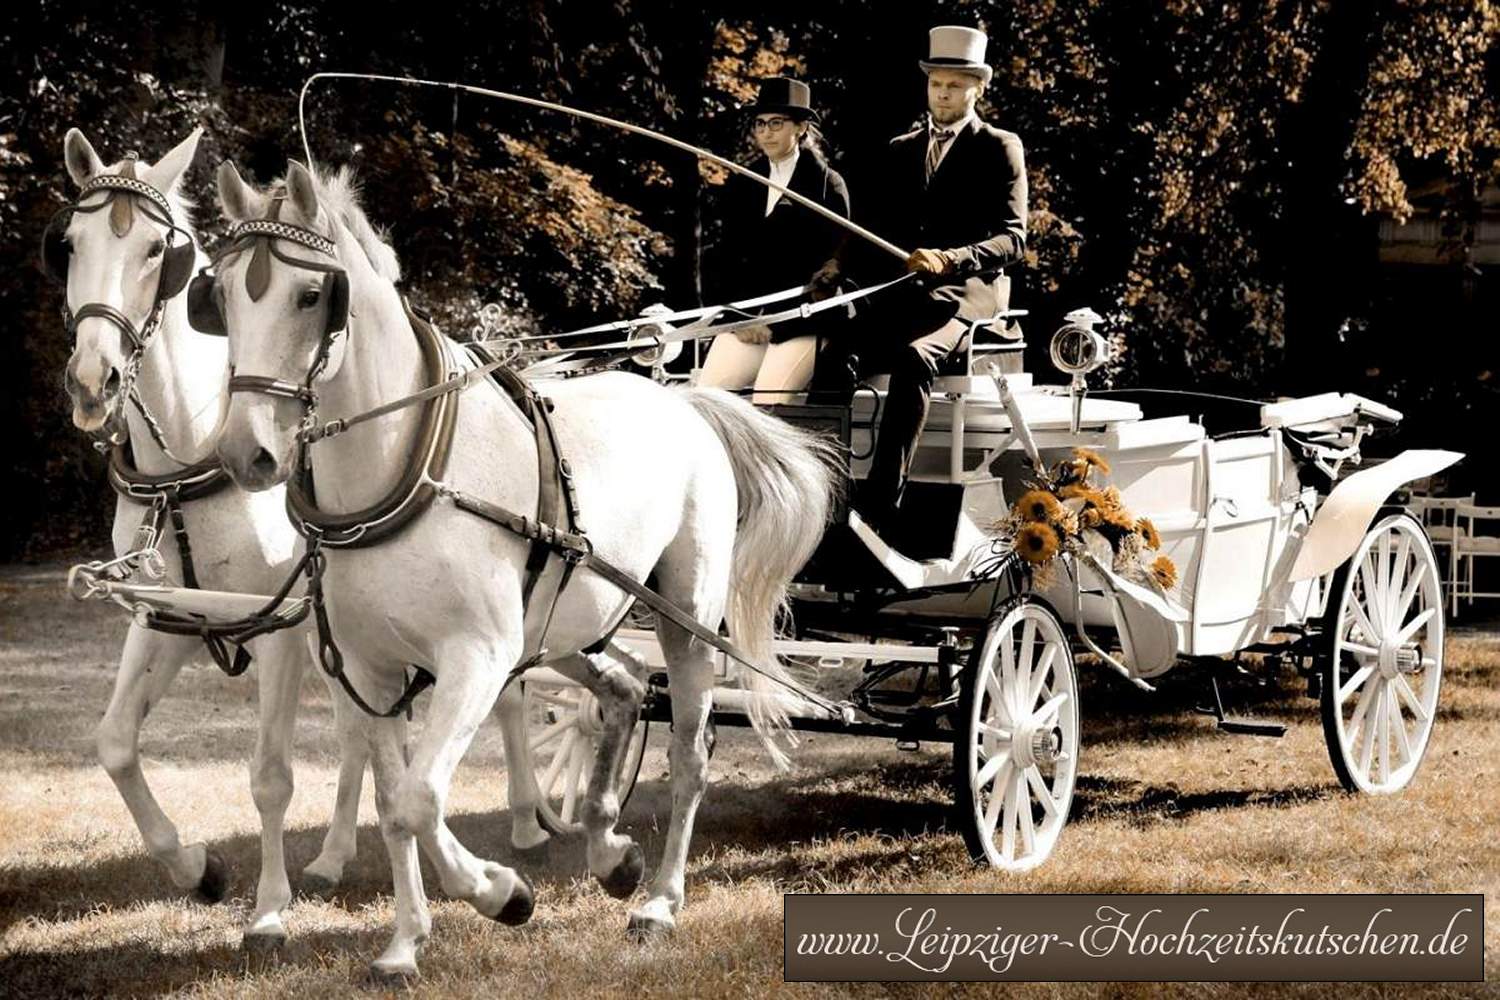 Weisse Landauer Pferdekutsche zur Hochzeit in Halle mieten